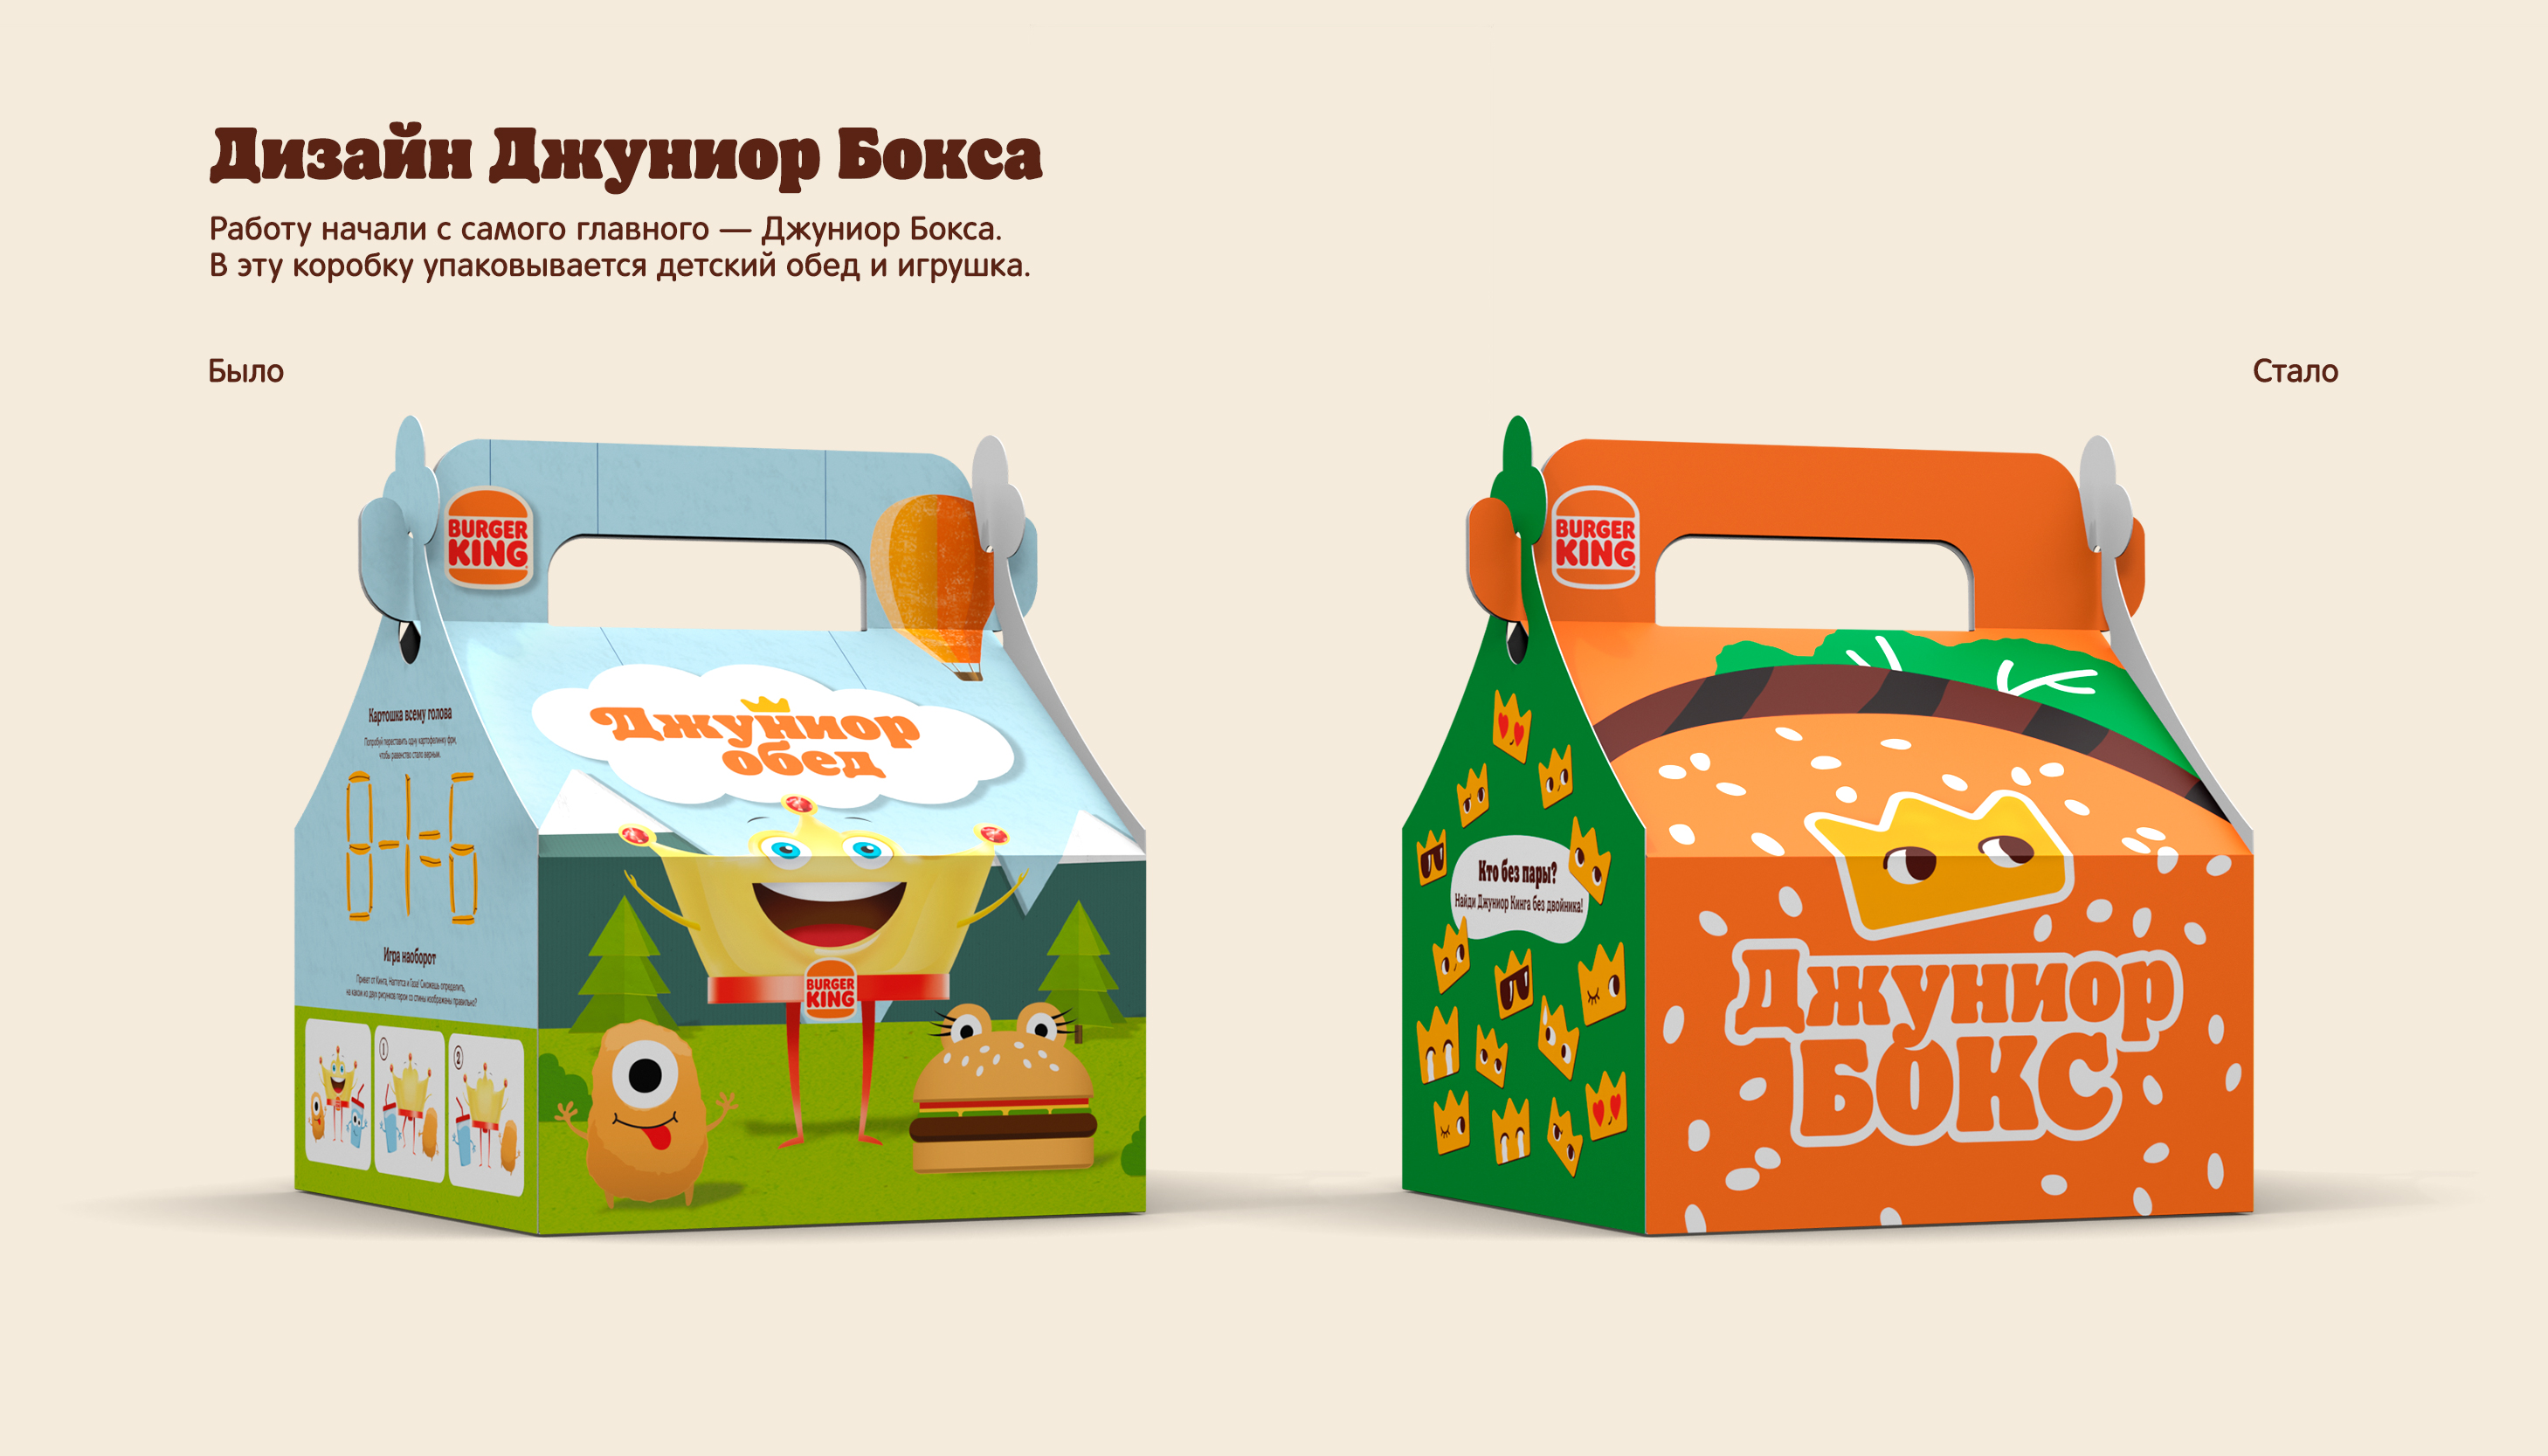 Редизайн Детских обедов для Бургер Кинга — Изображение №4 — Брендинг, Иллюстрация на Dprofile